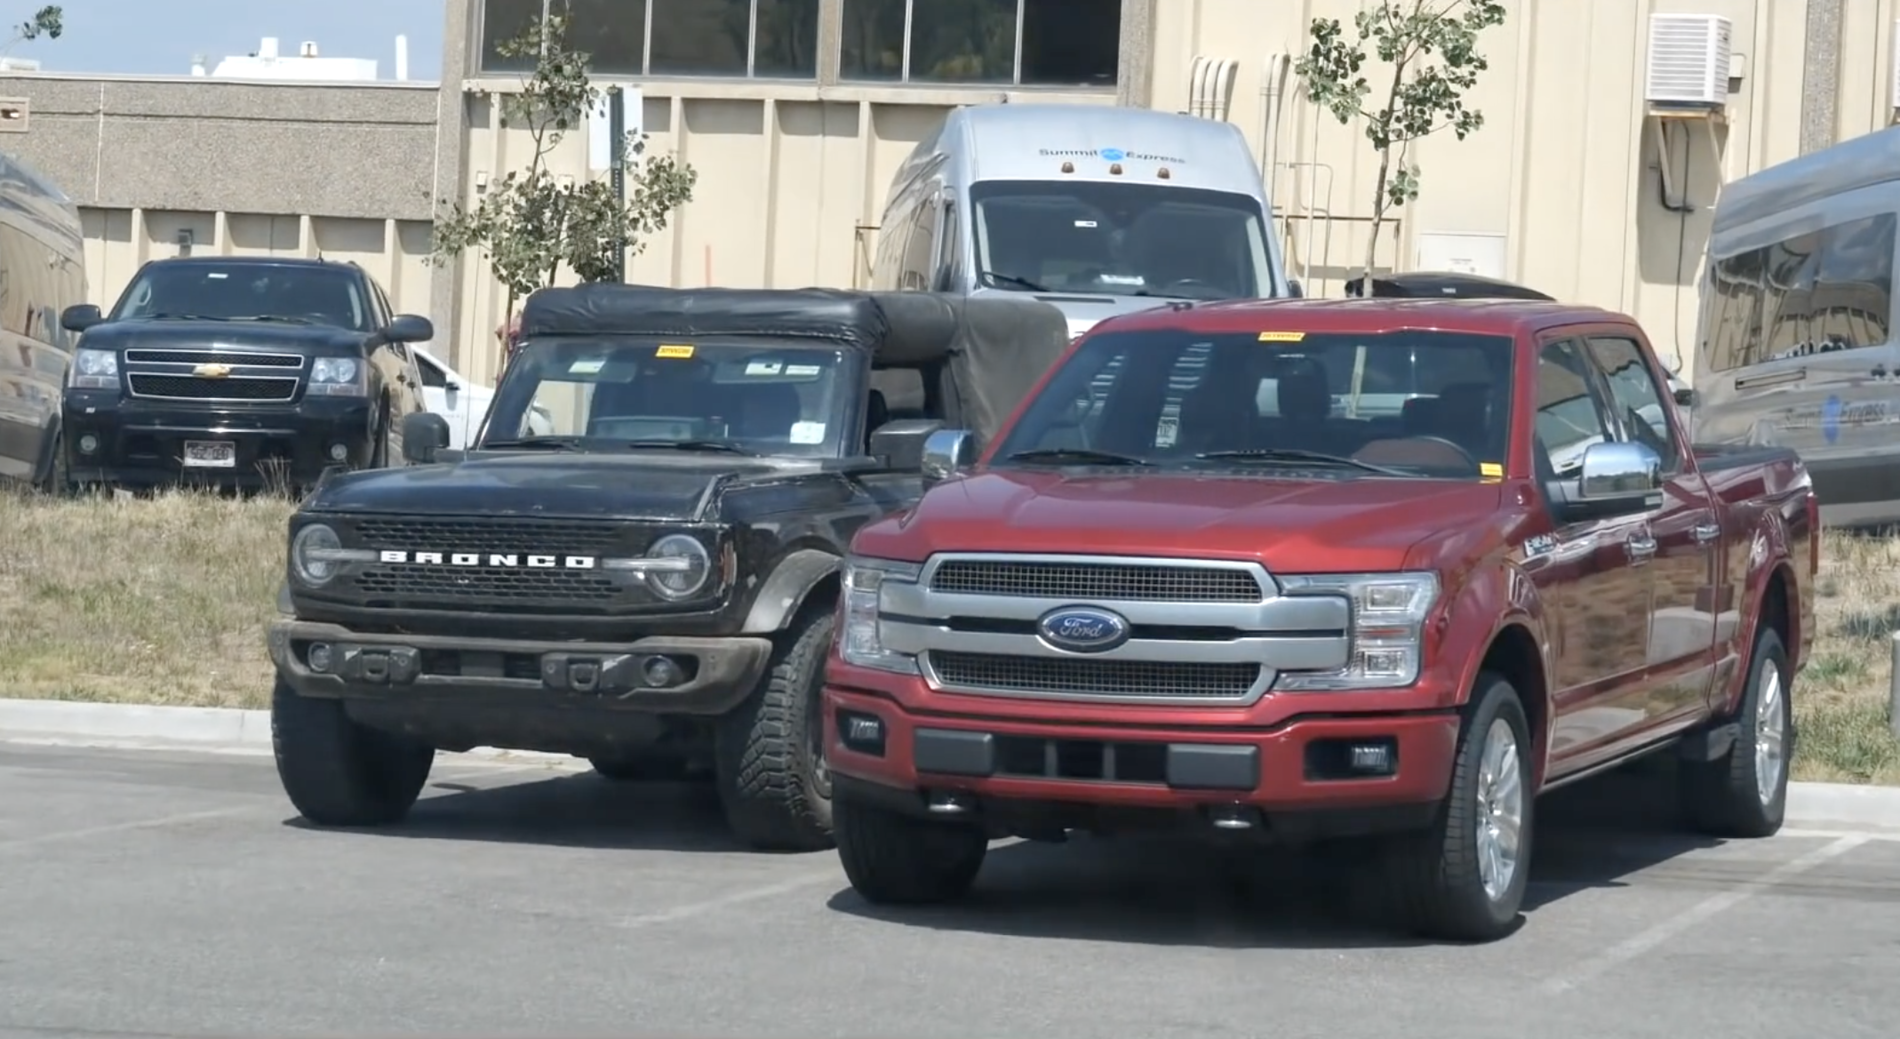 2021 Ford Bronco Sasquatch Size vs F-150 Comparison0.png